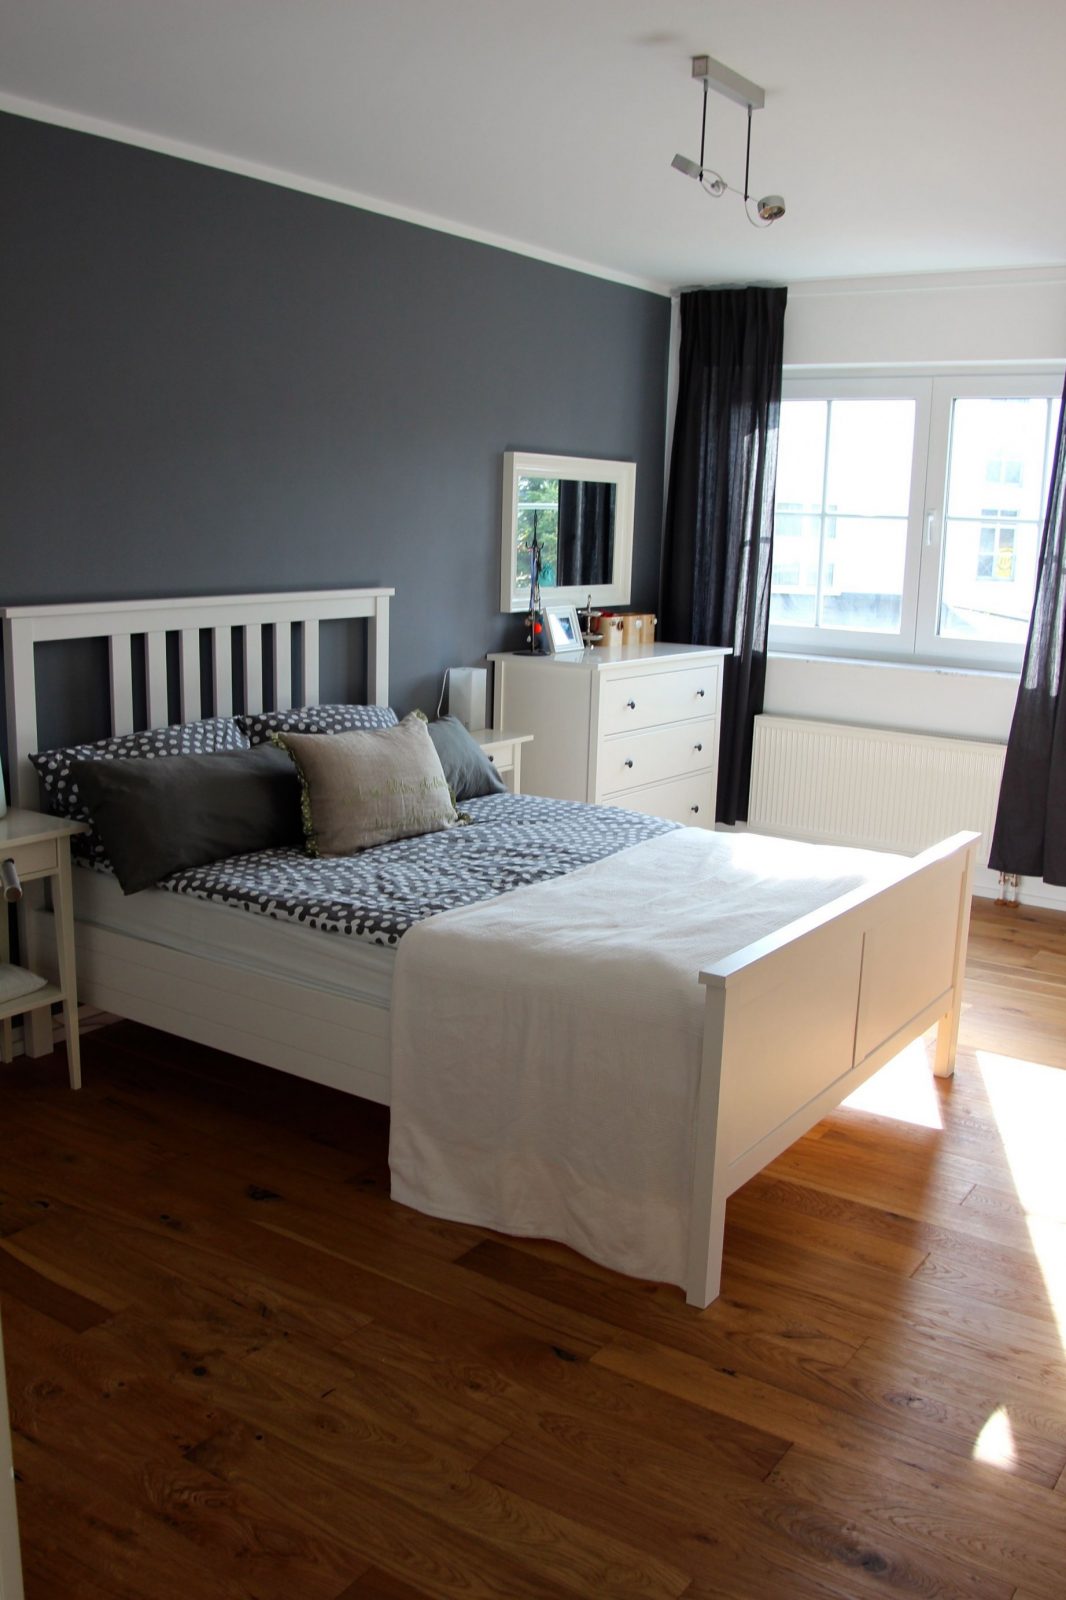 Die Schönsten Ideen Für Dein Ikea Schlafzimmer  Nesting von Zimmer Einrichten Ideen Ikea Bild